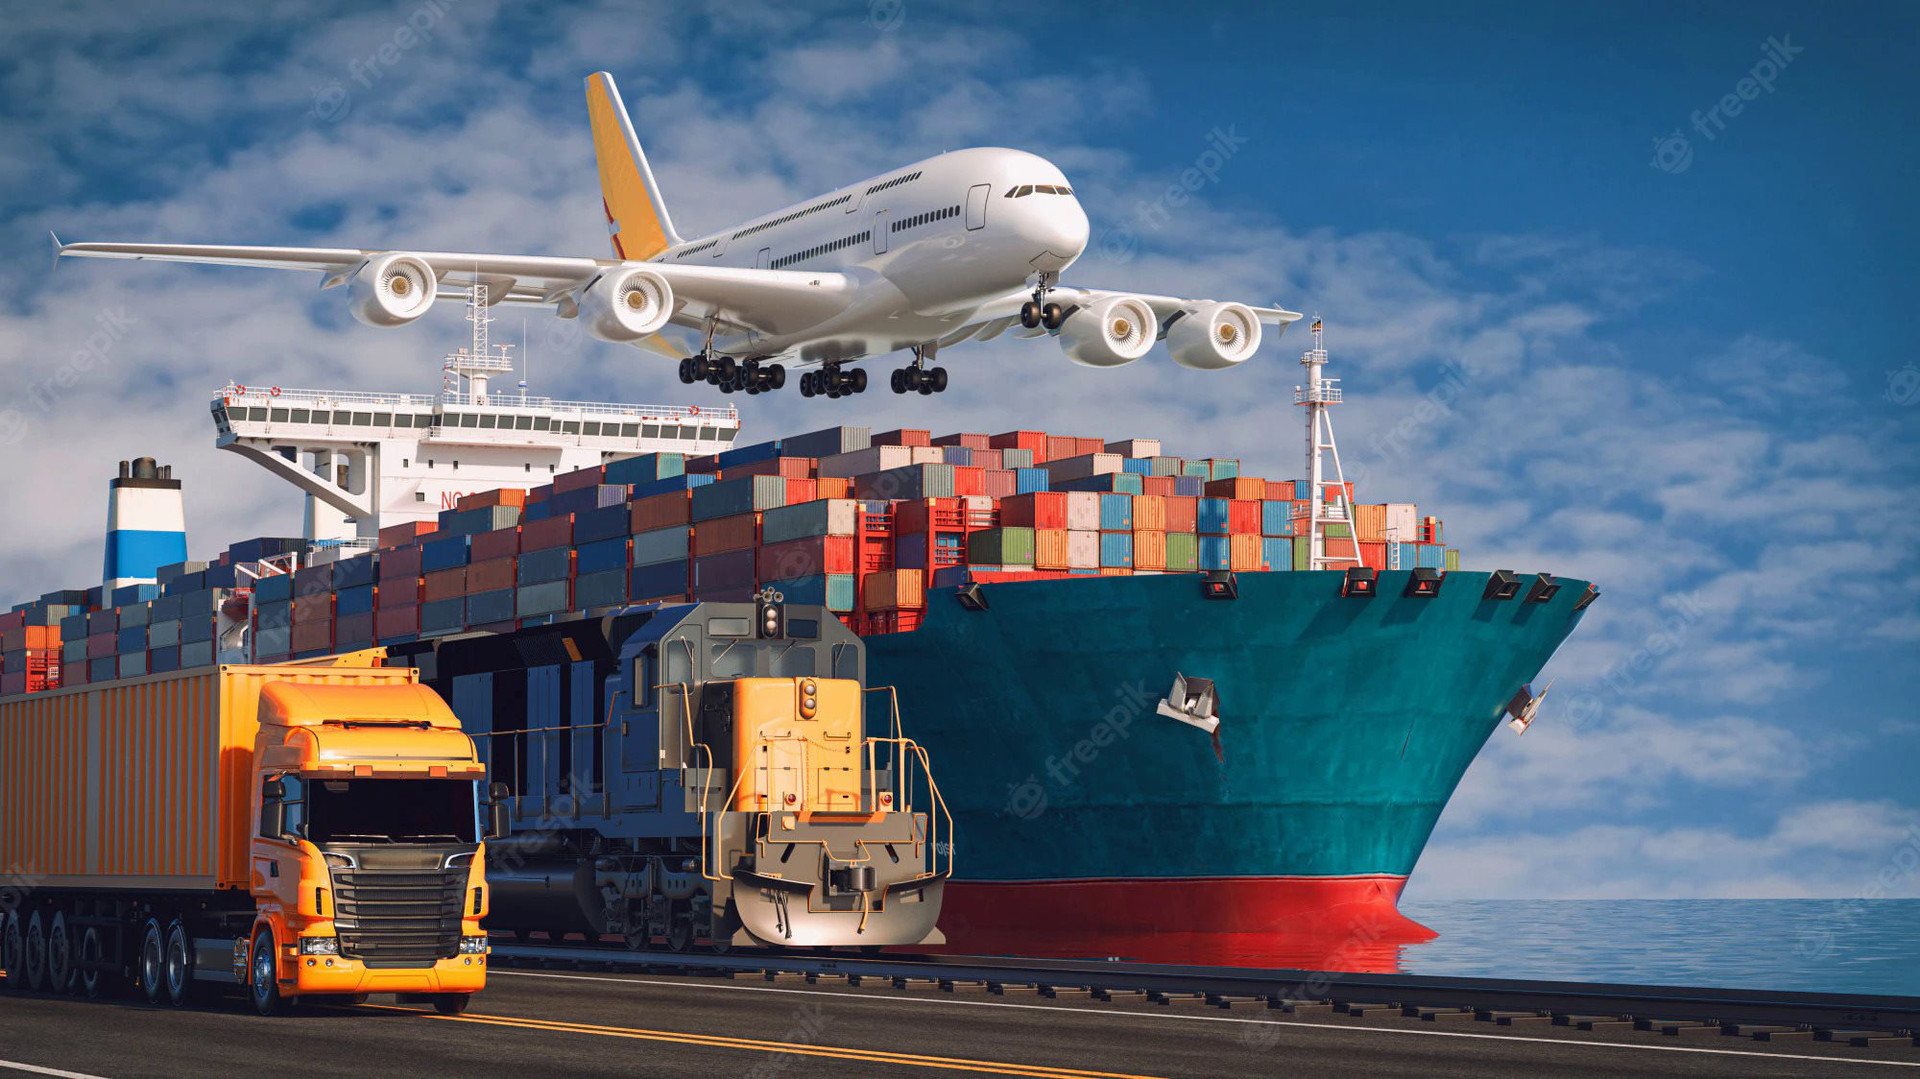 Top 10 ngành logistics năm 2022: Gemadept, Viettel Post, PV Trans tuột ngôi vương, xuất hiện nhiều gương mặt mới